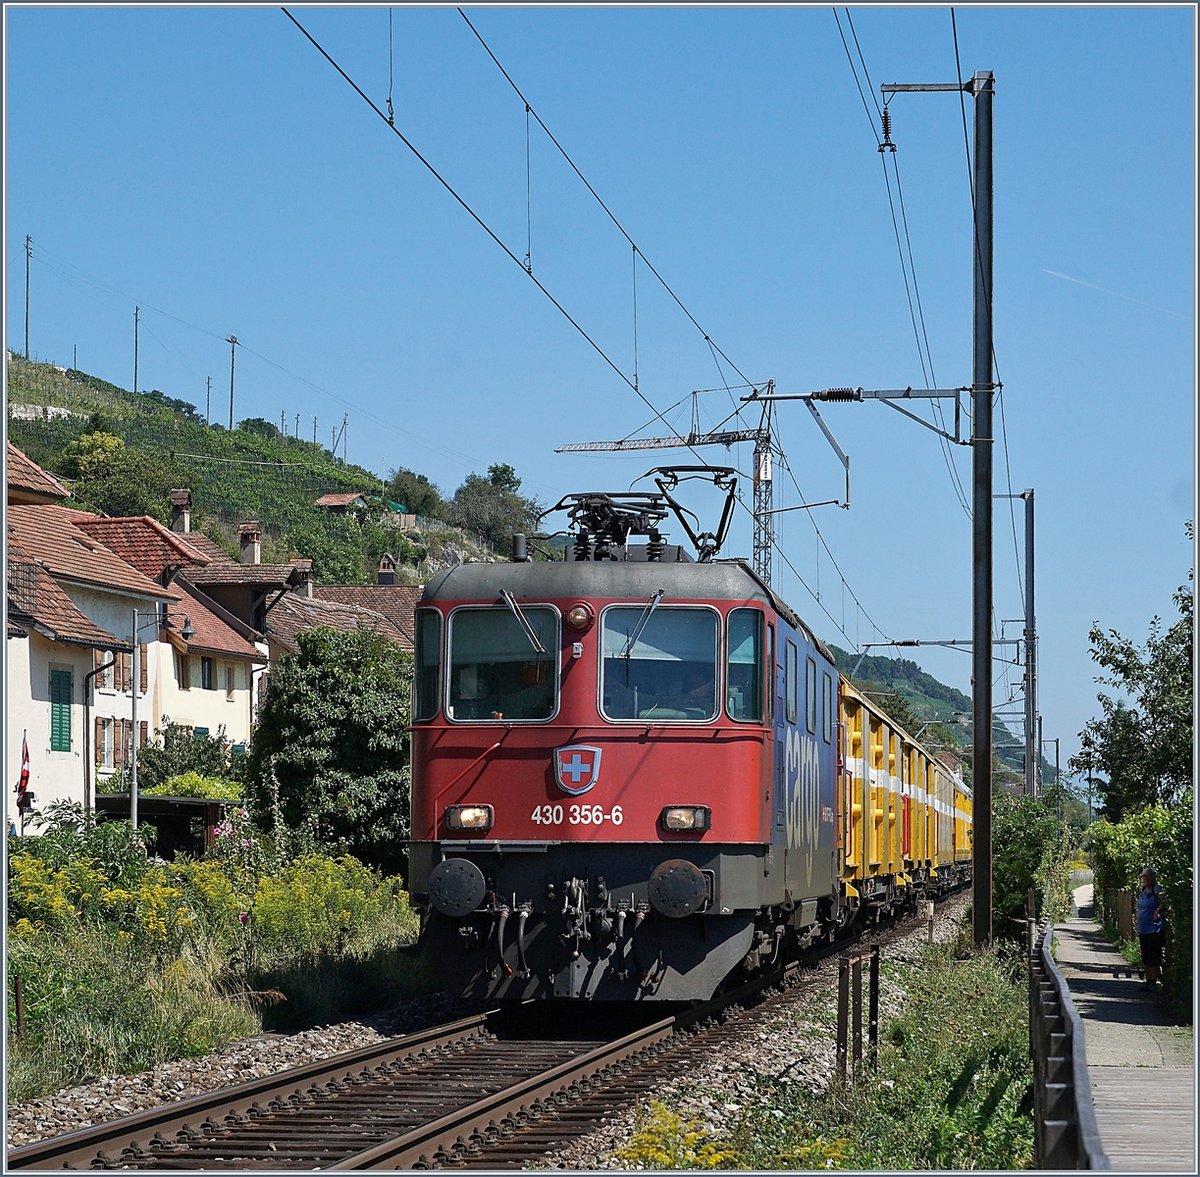 Die SBB Re 430 356-6 mit einem Postzug bei Ligerz.
18. Augsut 2017